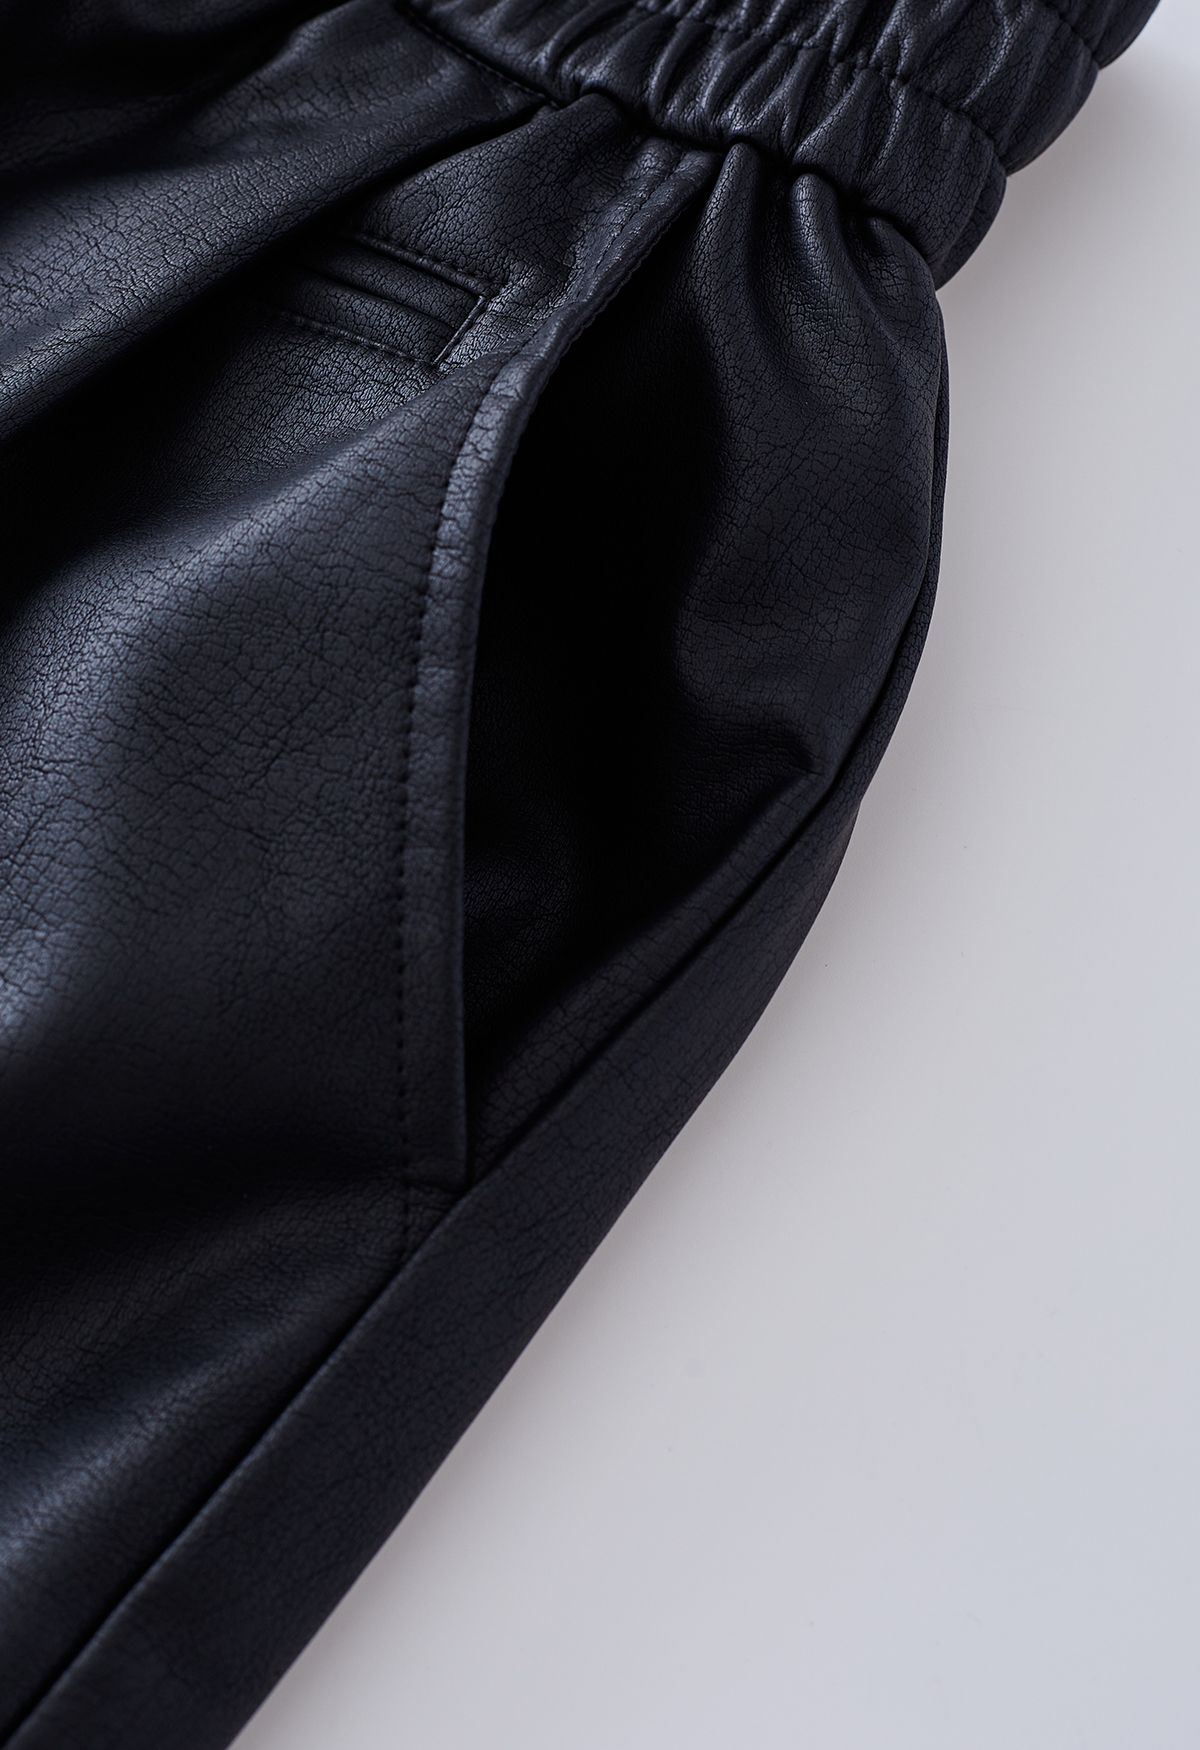 Shorts de piel sintética con botones texturizados en negro